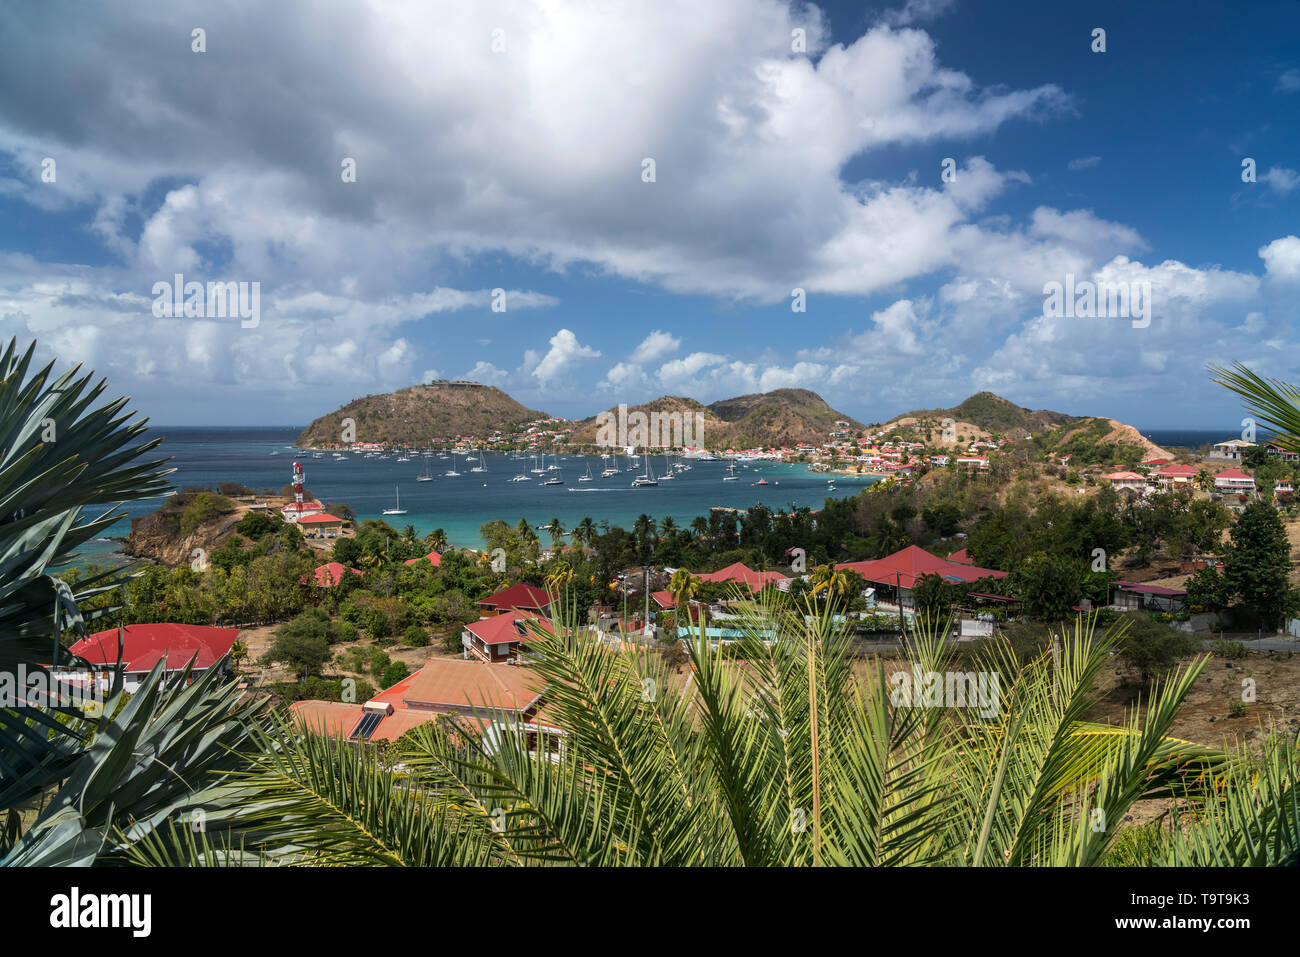 Insel Terre-de-Haut, Les Saintes,  Guadeloupe, Karibik, Frankreich  | Terre-de-Haut, Les Saintes, Guadeloupe, France Stock Photo